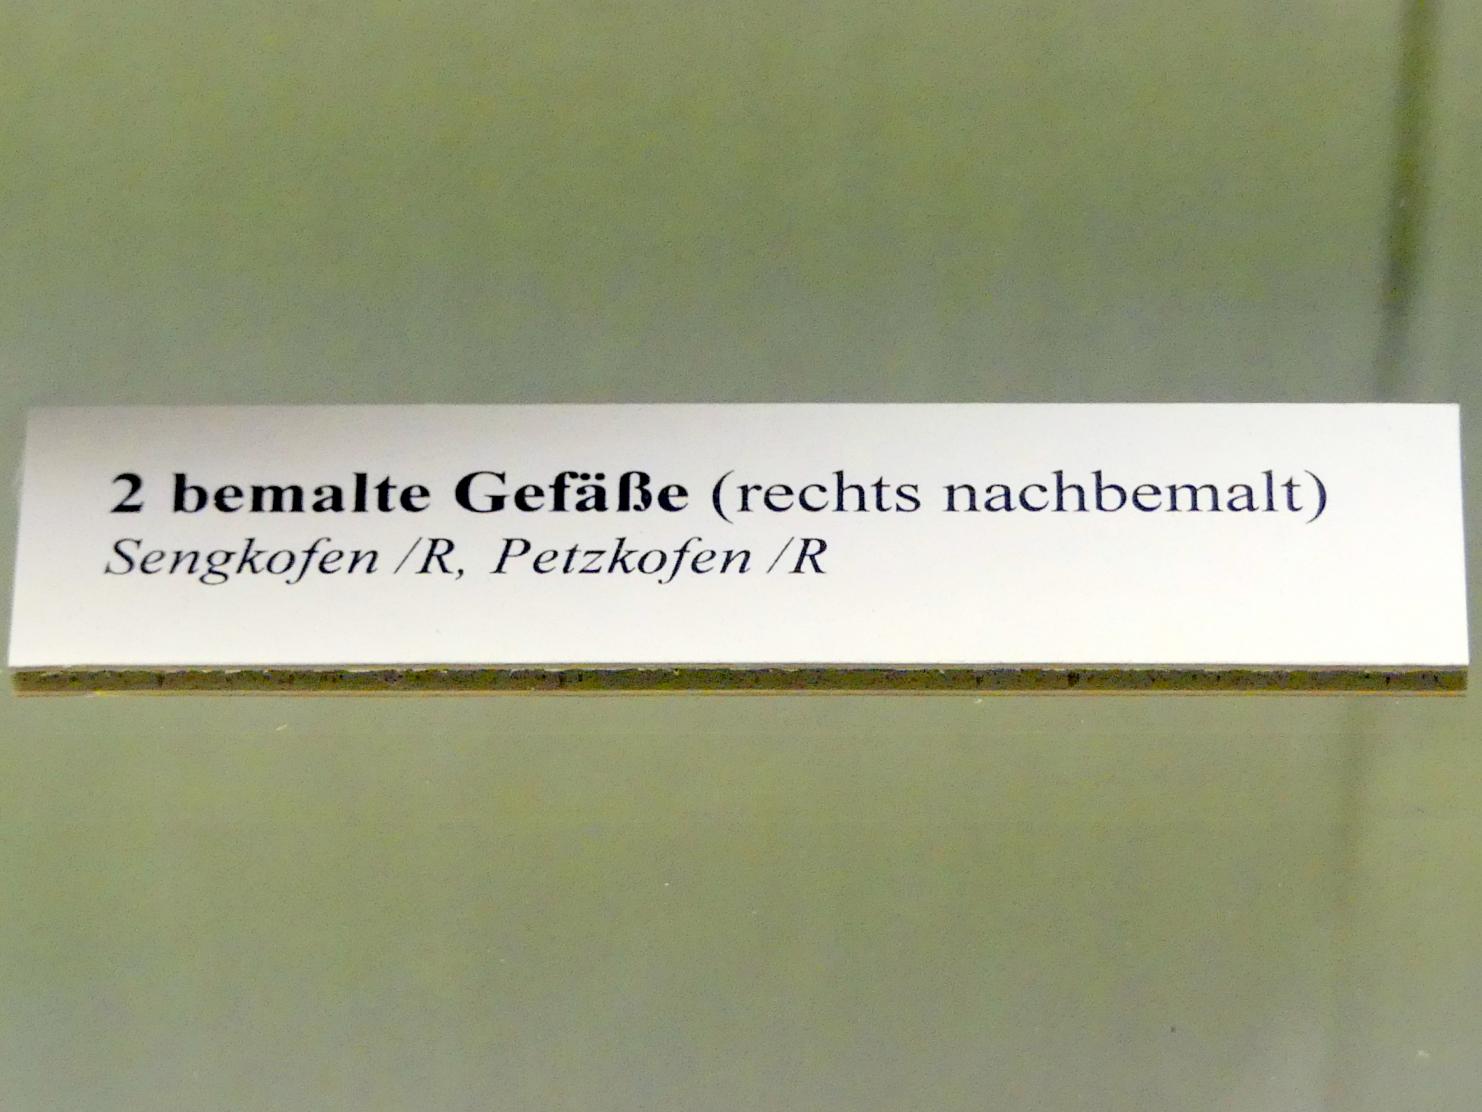 Bemaltes Gefäß, Hallstattzeit, 700 - 200 v. Chr., Bild 2/2